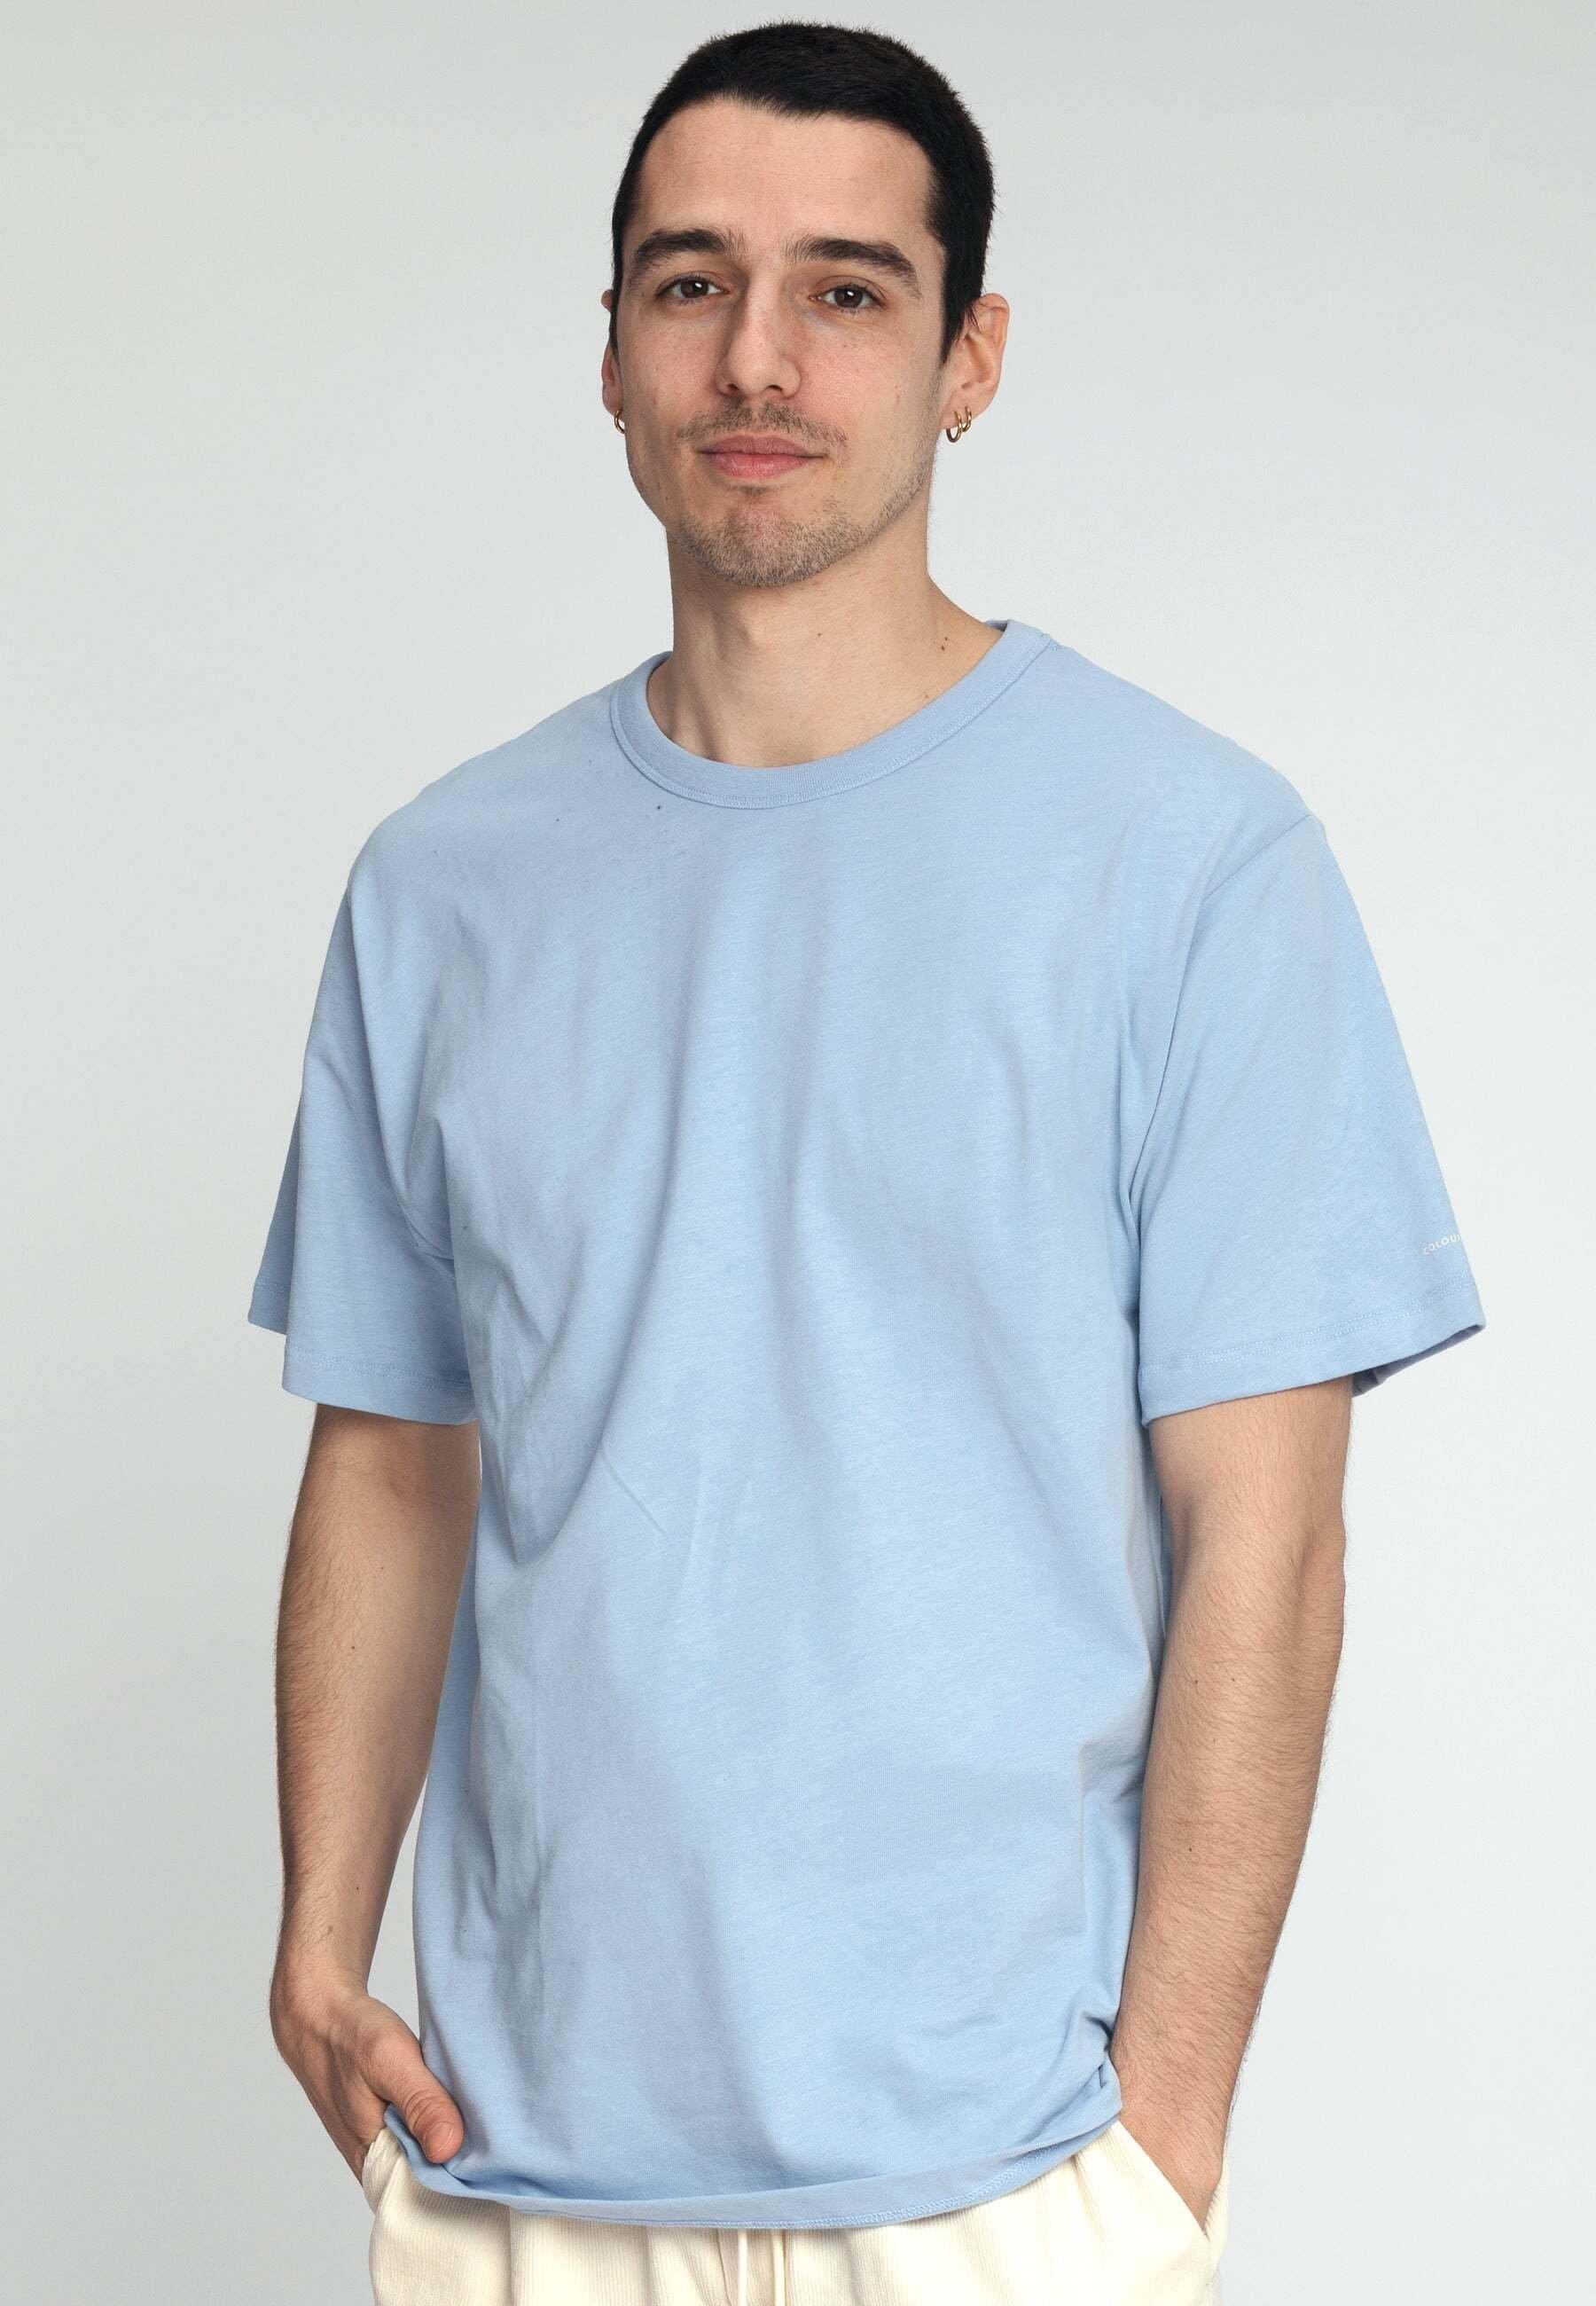 T-shirts T-shirt Mfaos Print Herren Blau L von Colours & Sons